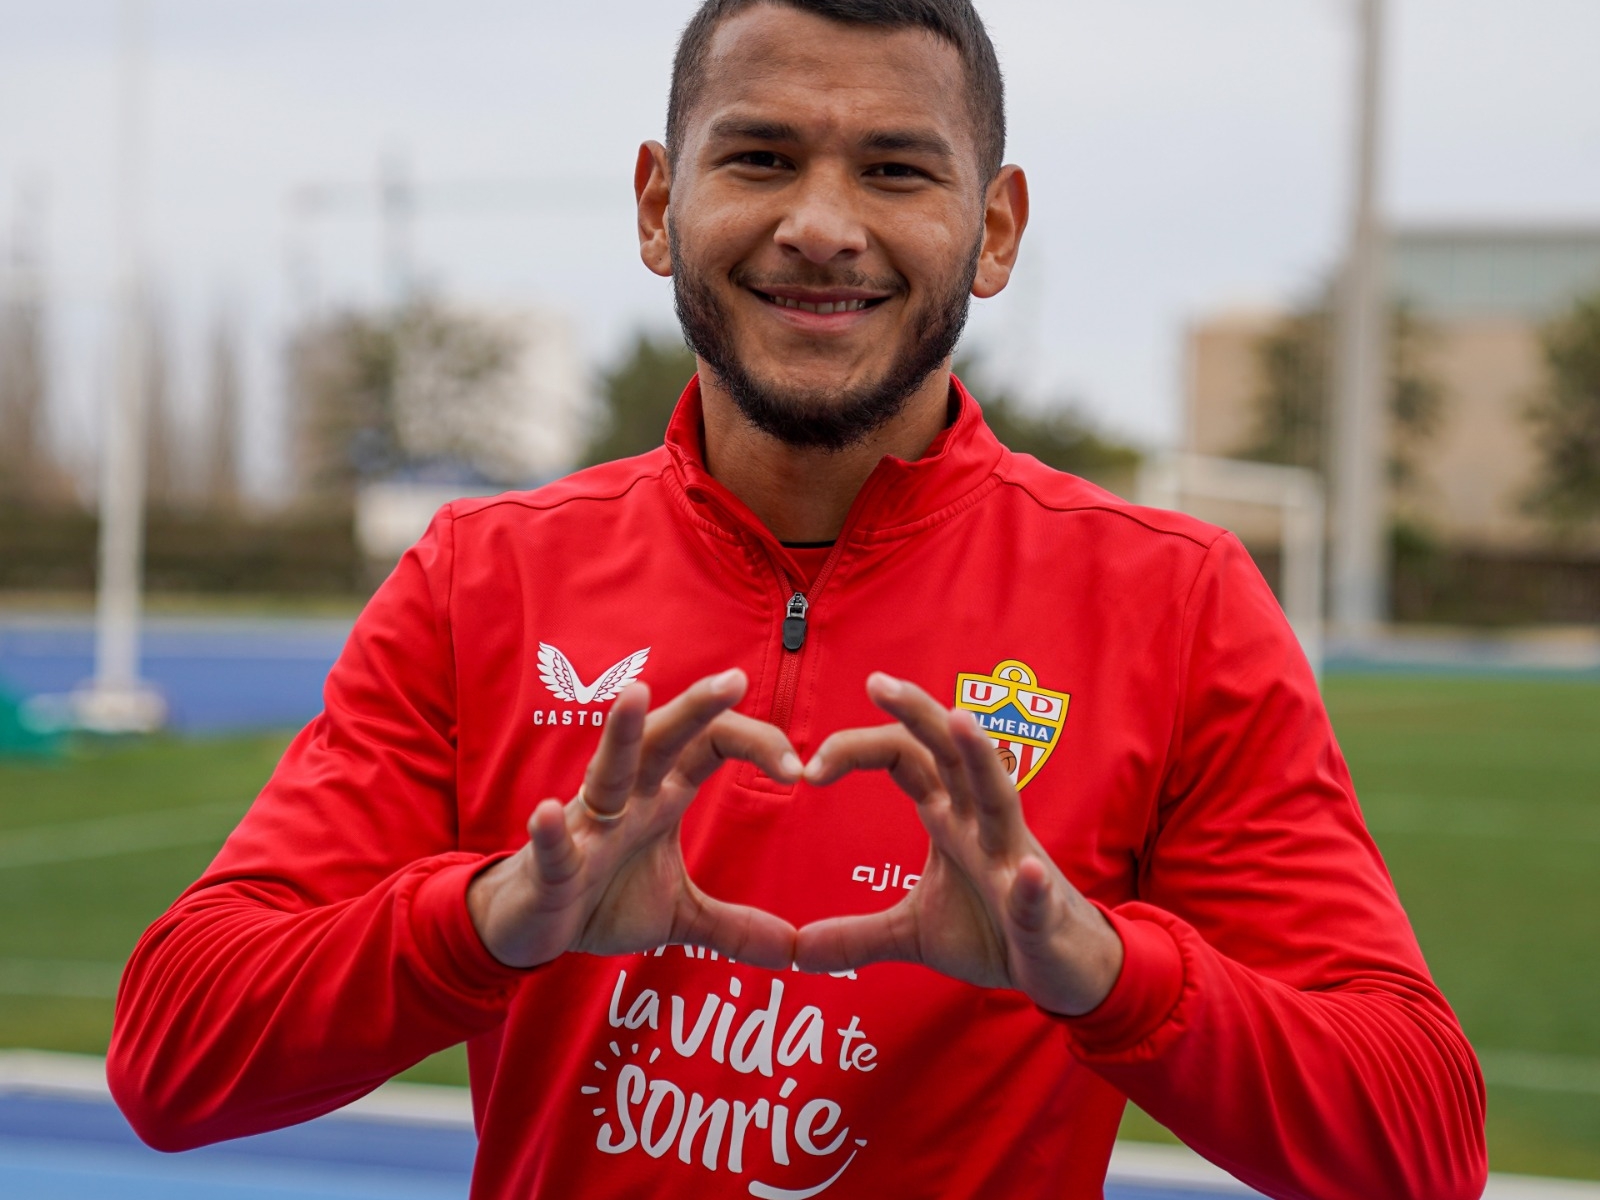 Jugador de la UD Almería con la camiseta con slogan En Almería la vida te sonríe